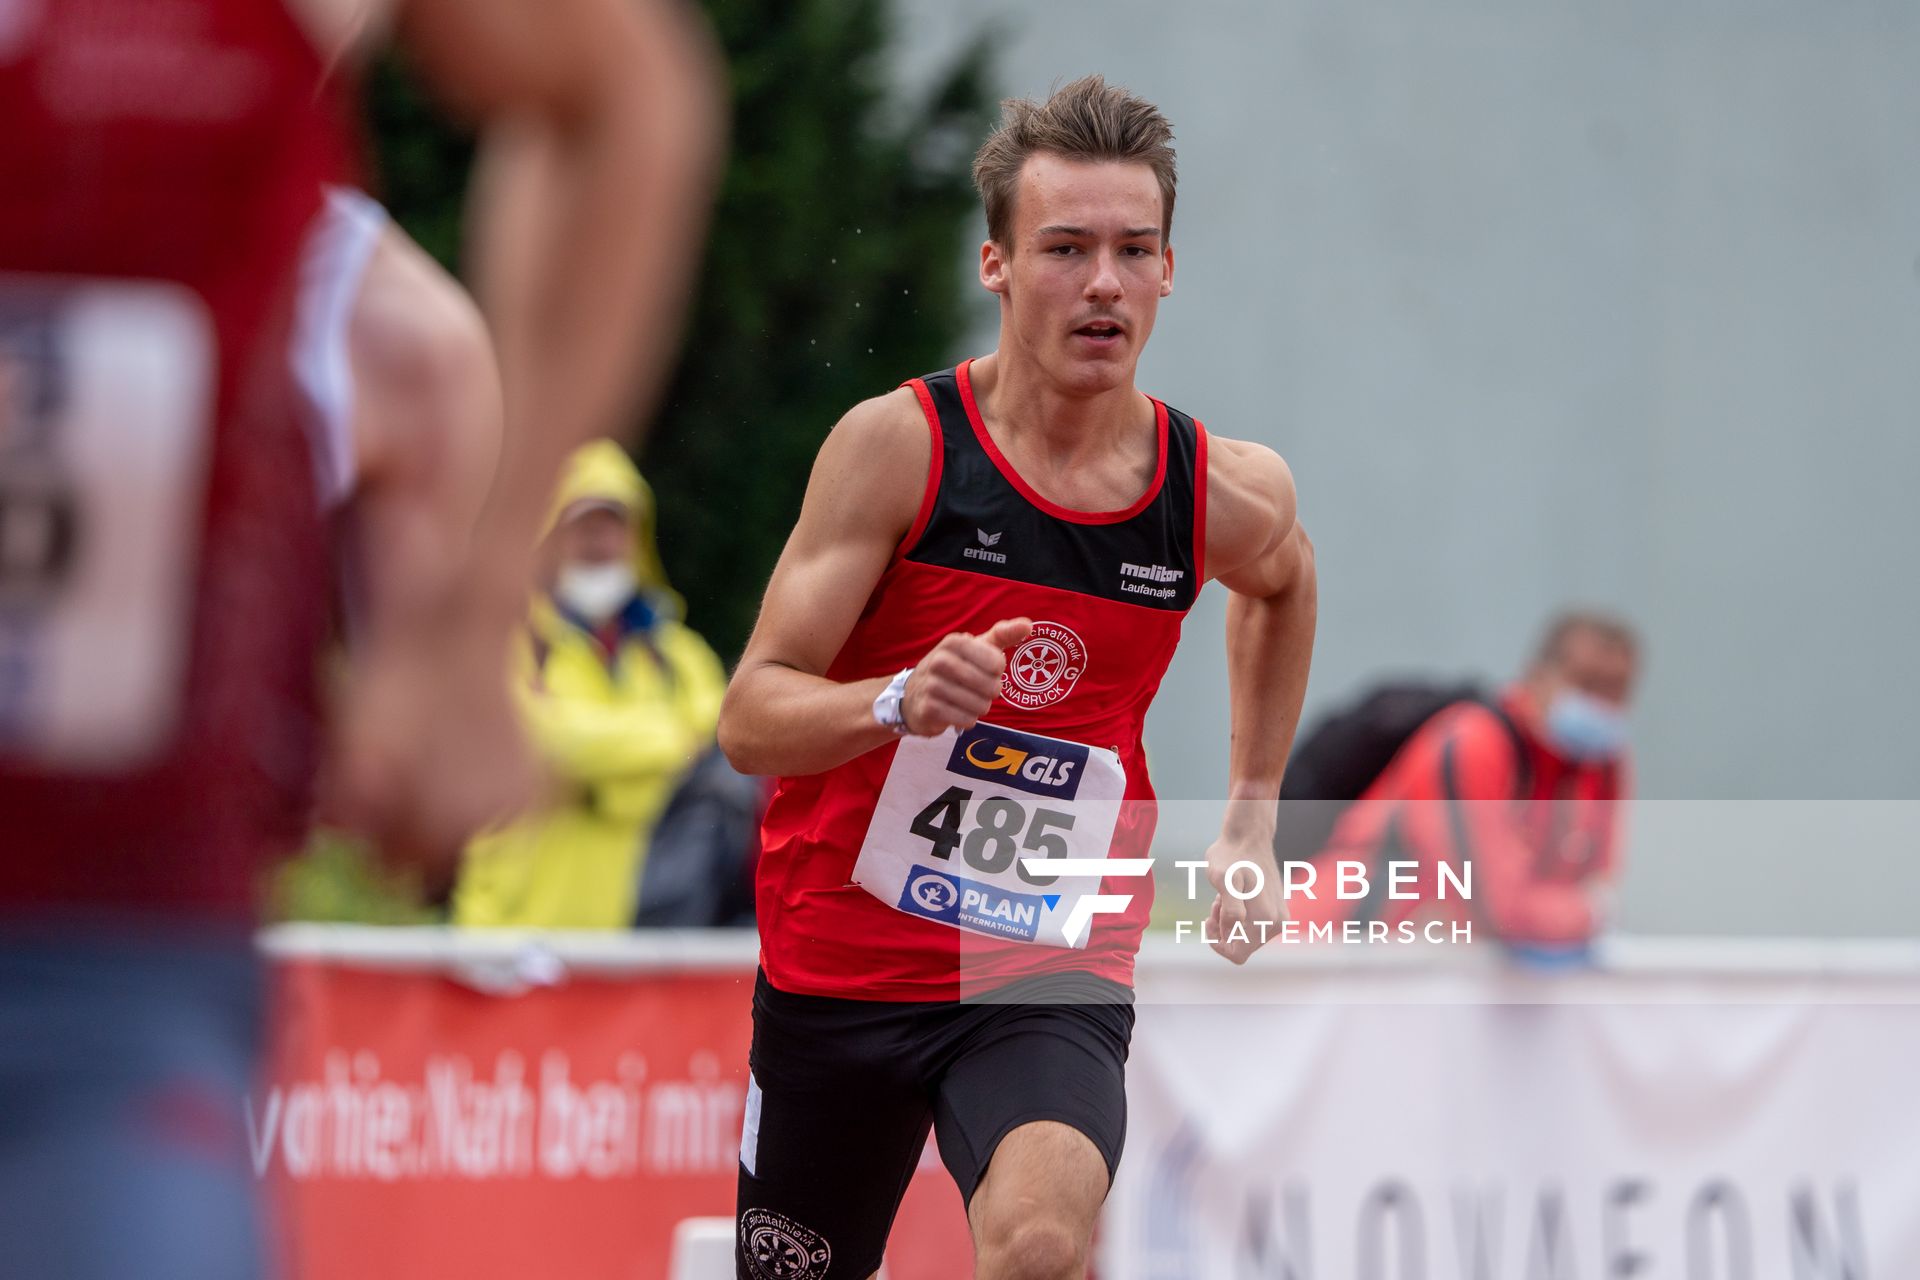 Florian Kroll (LG Osnabrueck) holt Bronze im 400m Finale am 31.07.2021 waehrend den deutschen Leichtathletik-Jugendmeisterschaften 2021 in Rostock (Tag 2)